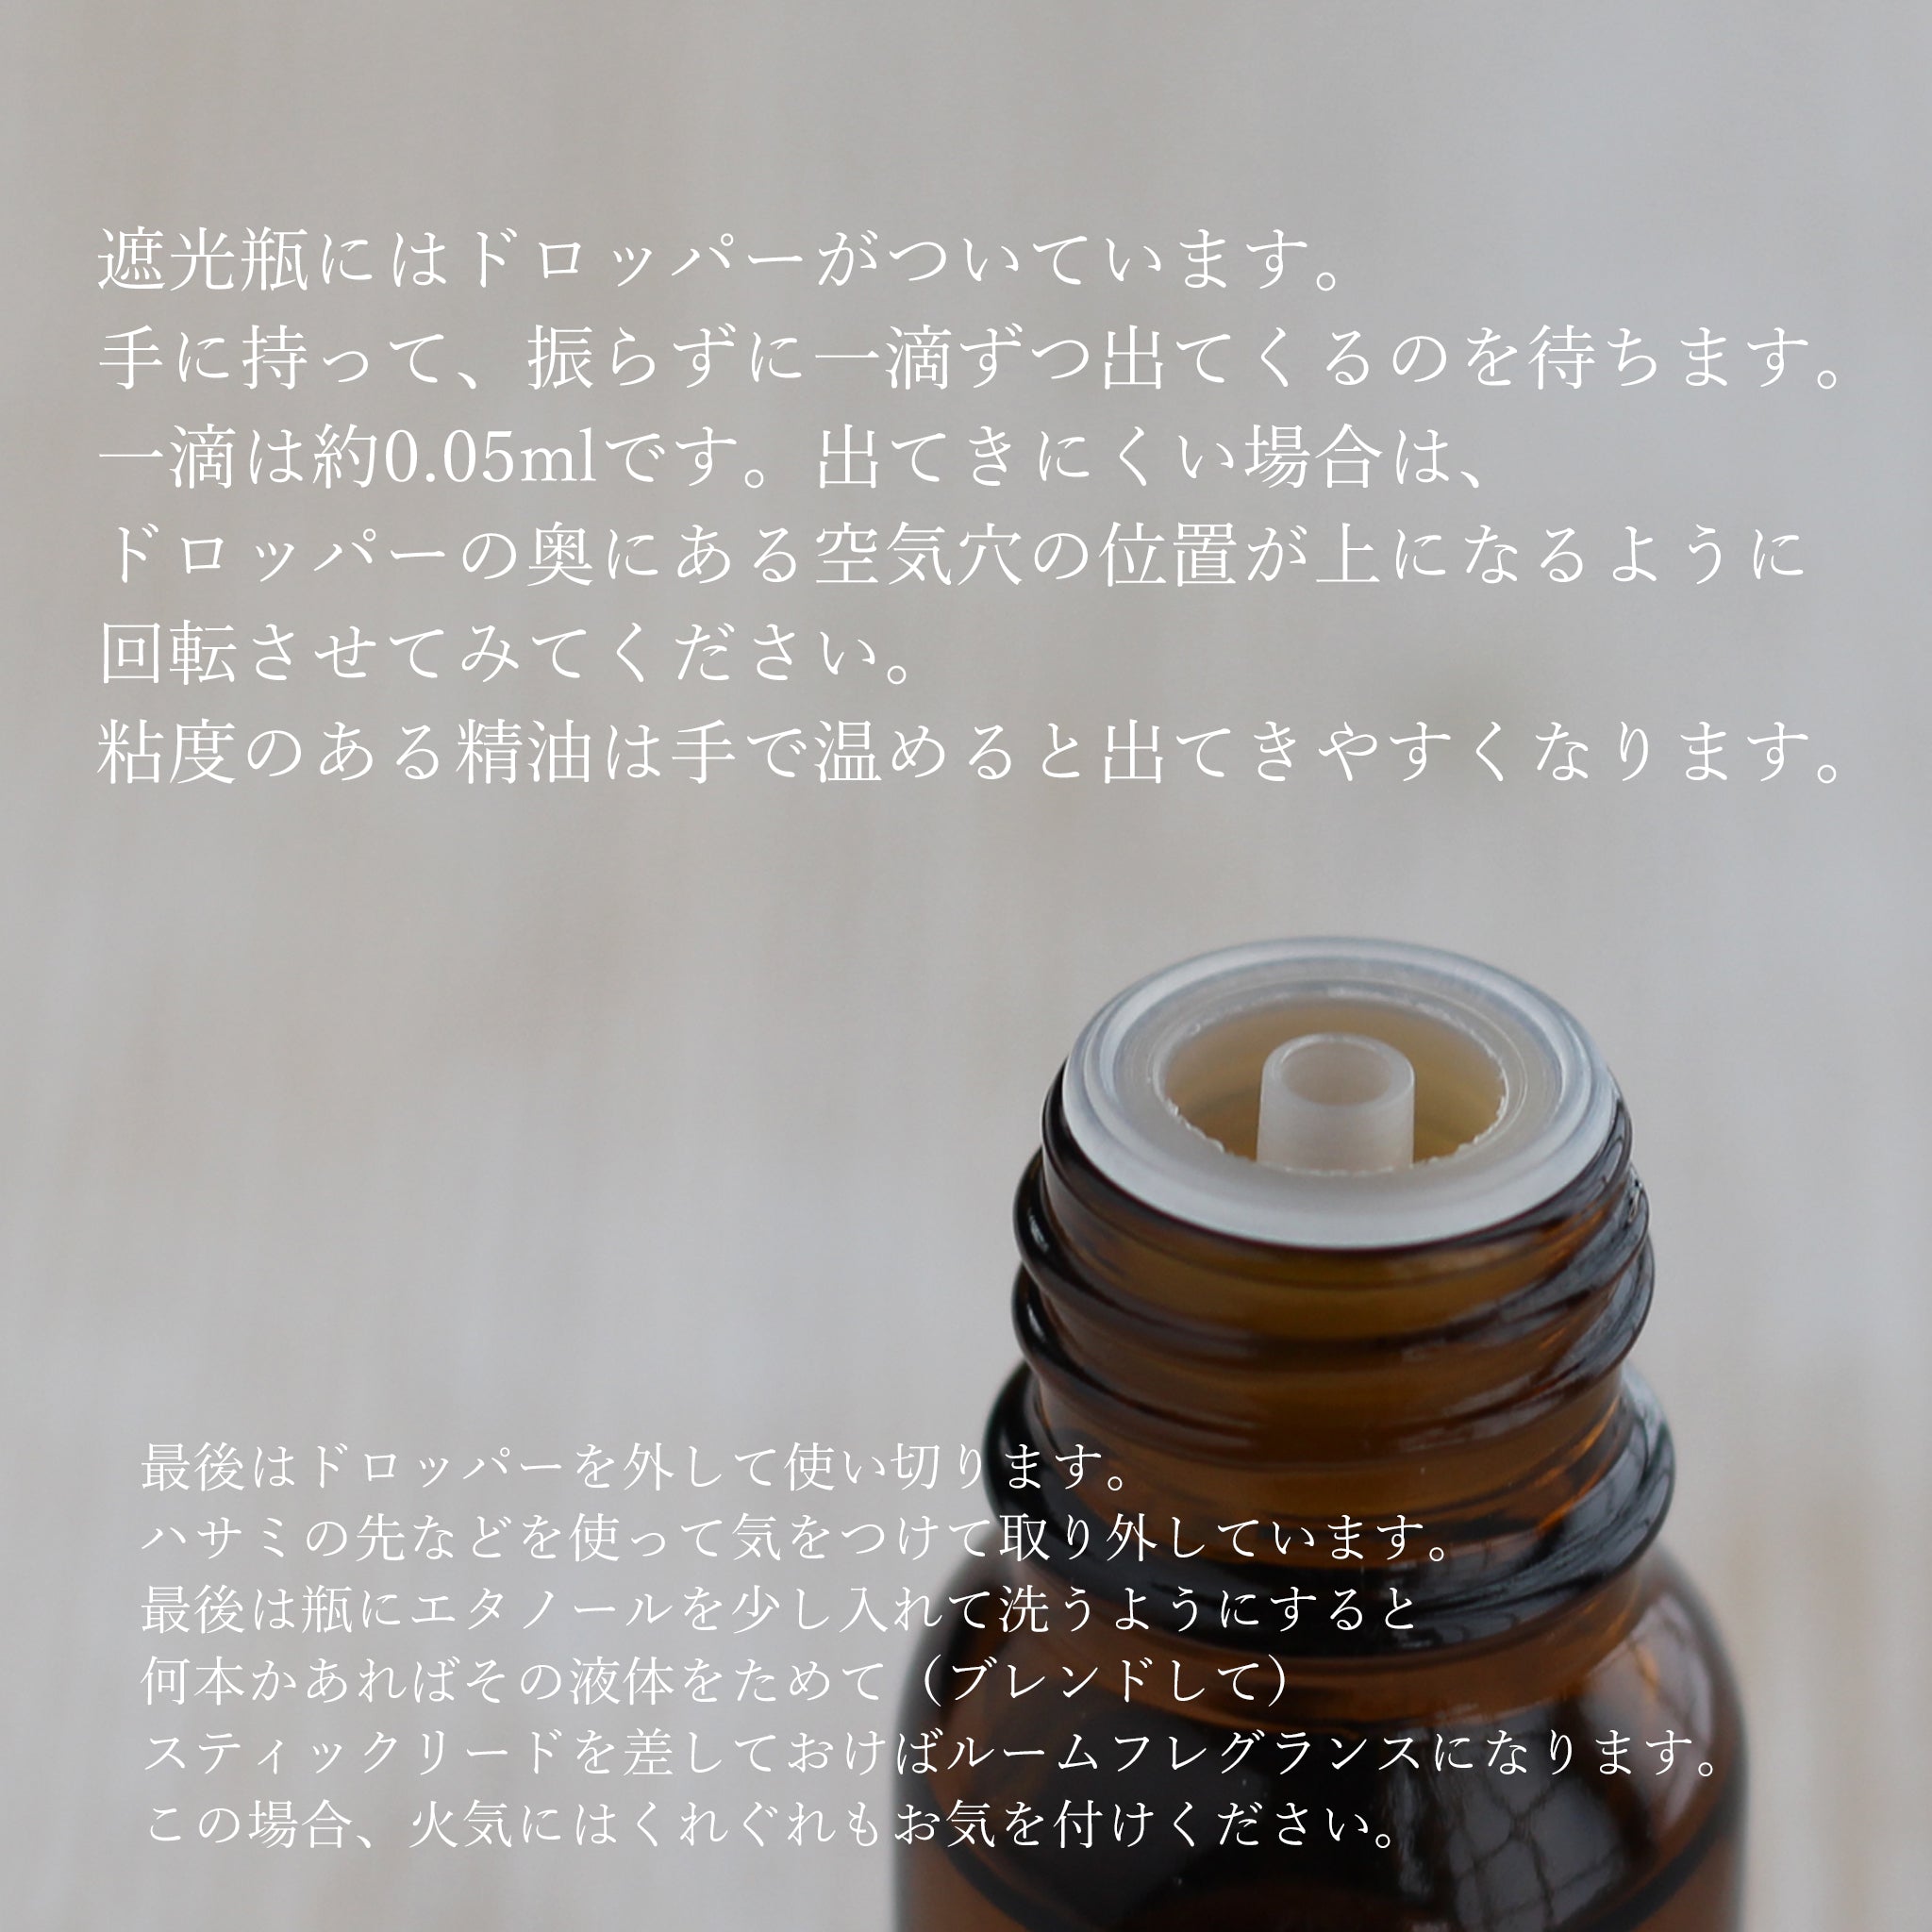 精油 シナモン・バーク Cinnamon bark／エッセンシャルオイル 5ml